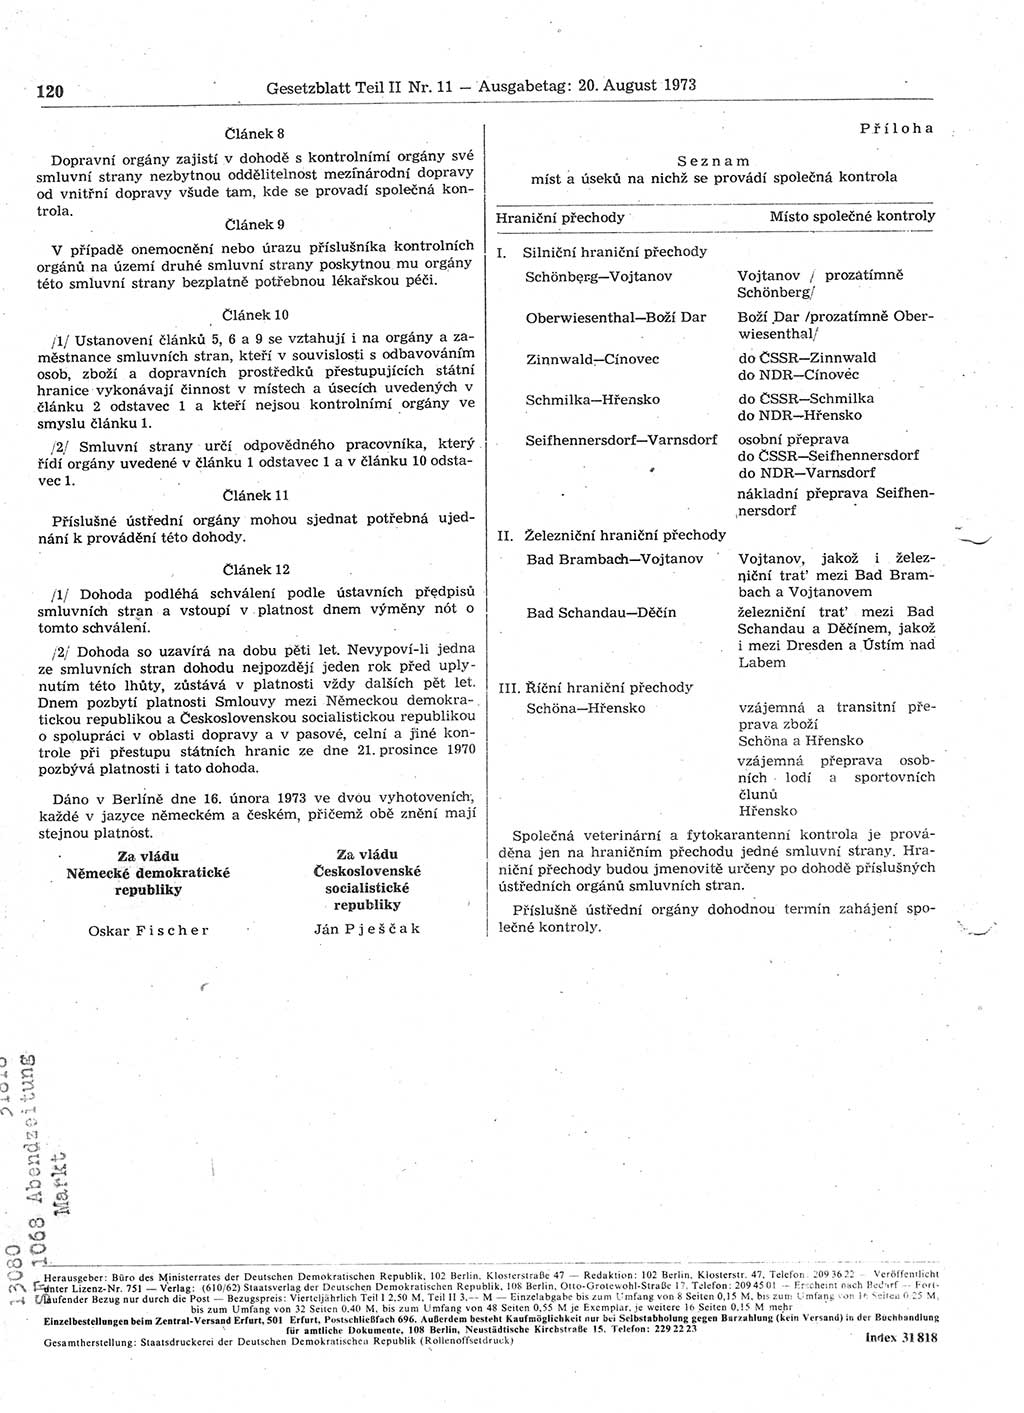 Gesetzblatt (GBl.) der Deutschen Demokratischen Republik (DDR) Teil ⅠⅠ 1973, Seite 120 (GBl. DDR ⅠⅠ 1973, S. 120)